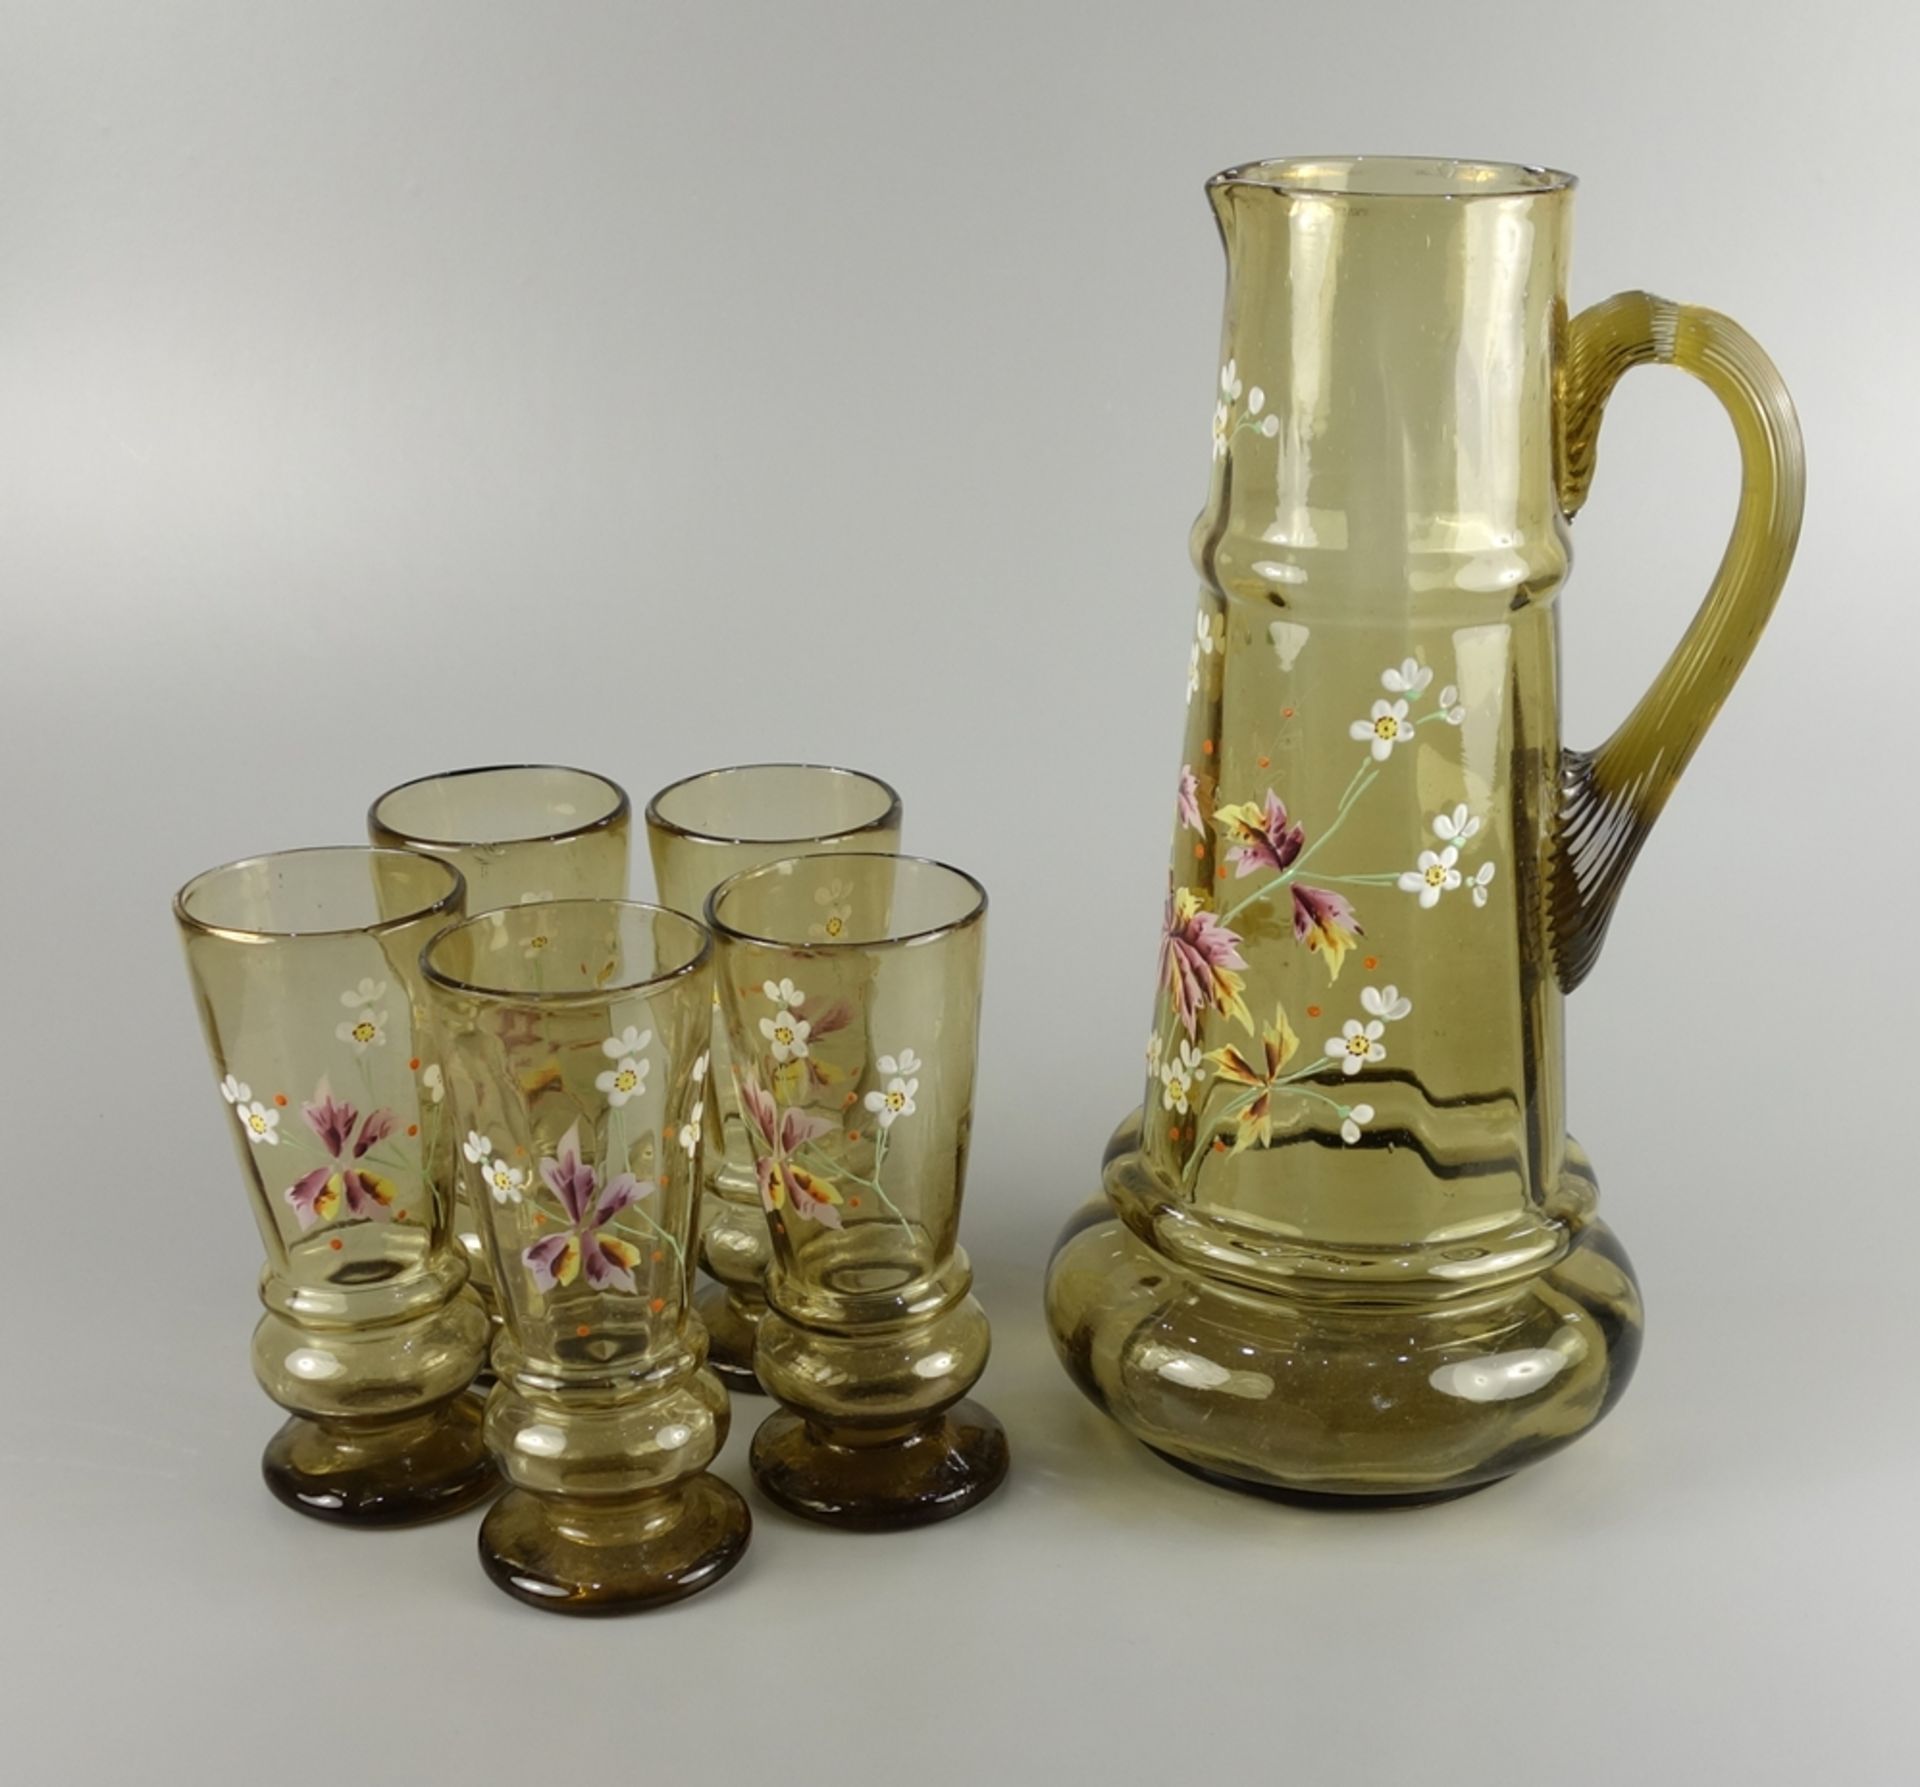 Schenkkanne mit 5 Gläsern, um 1890, Grünglas, florale Emaillemalerei, Kanne mit